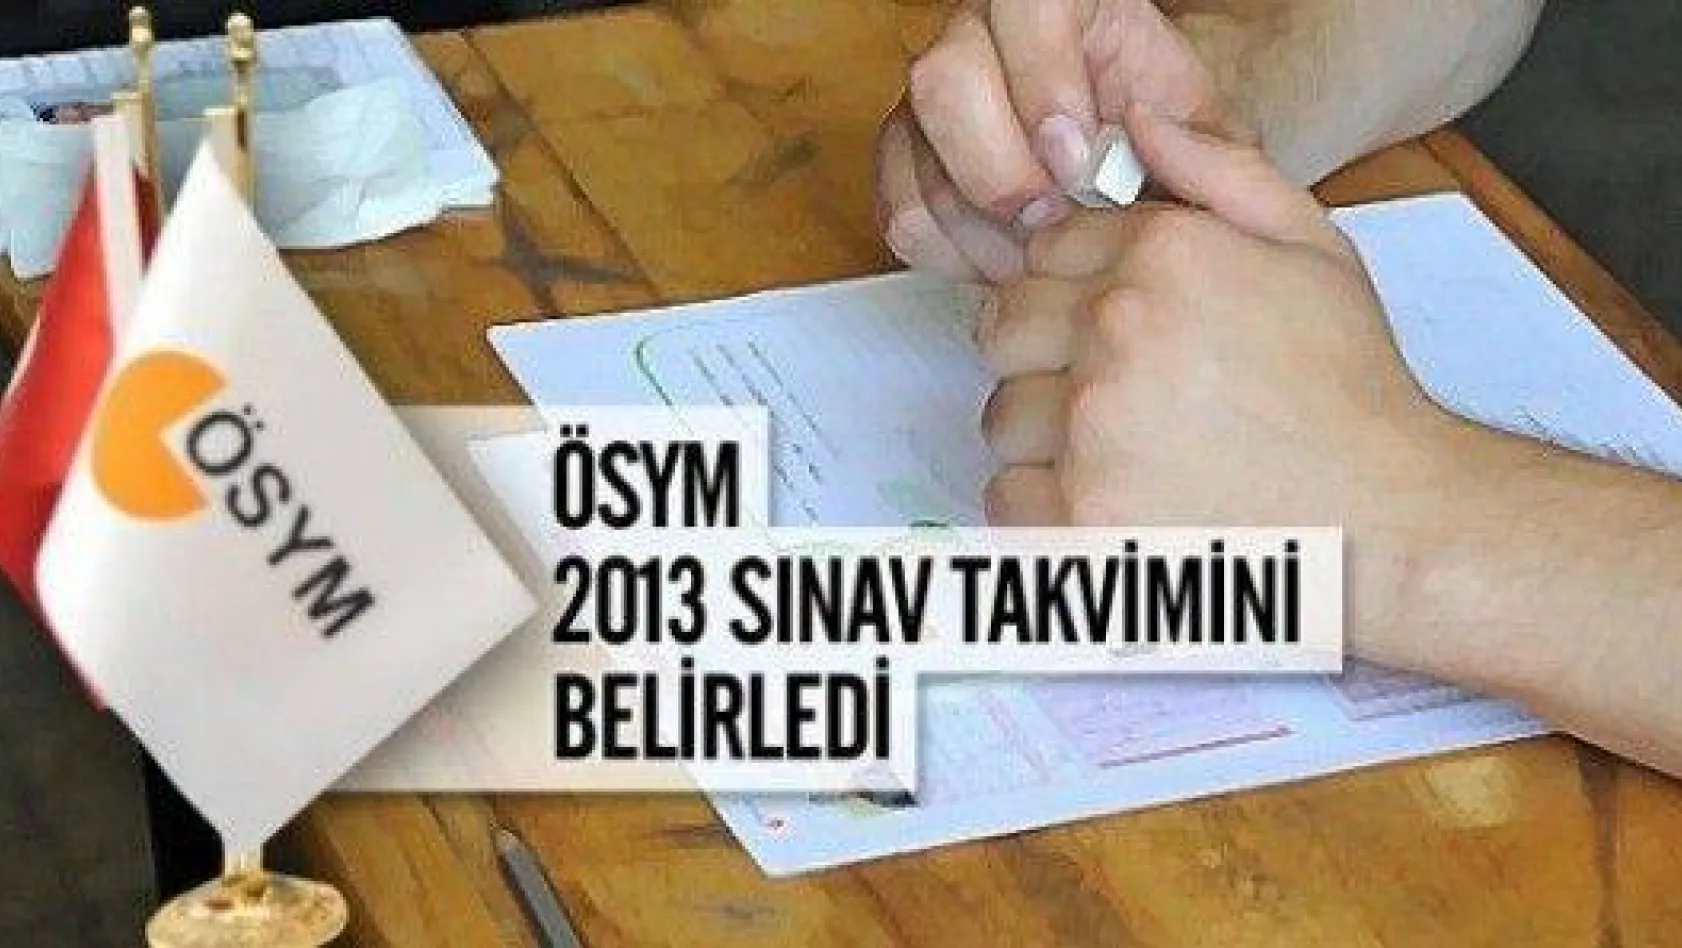 ÖSYM 2013 sınav takvimi yayımlandı